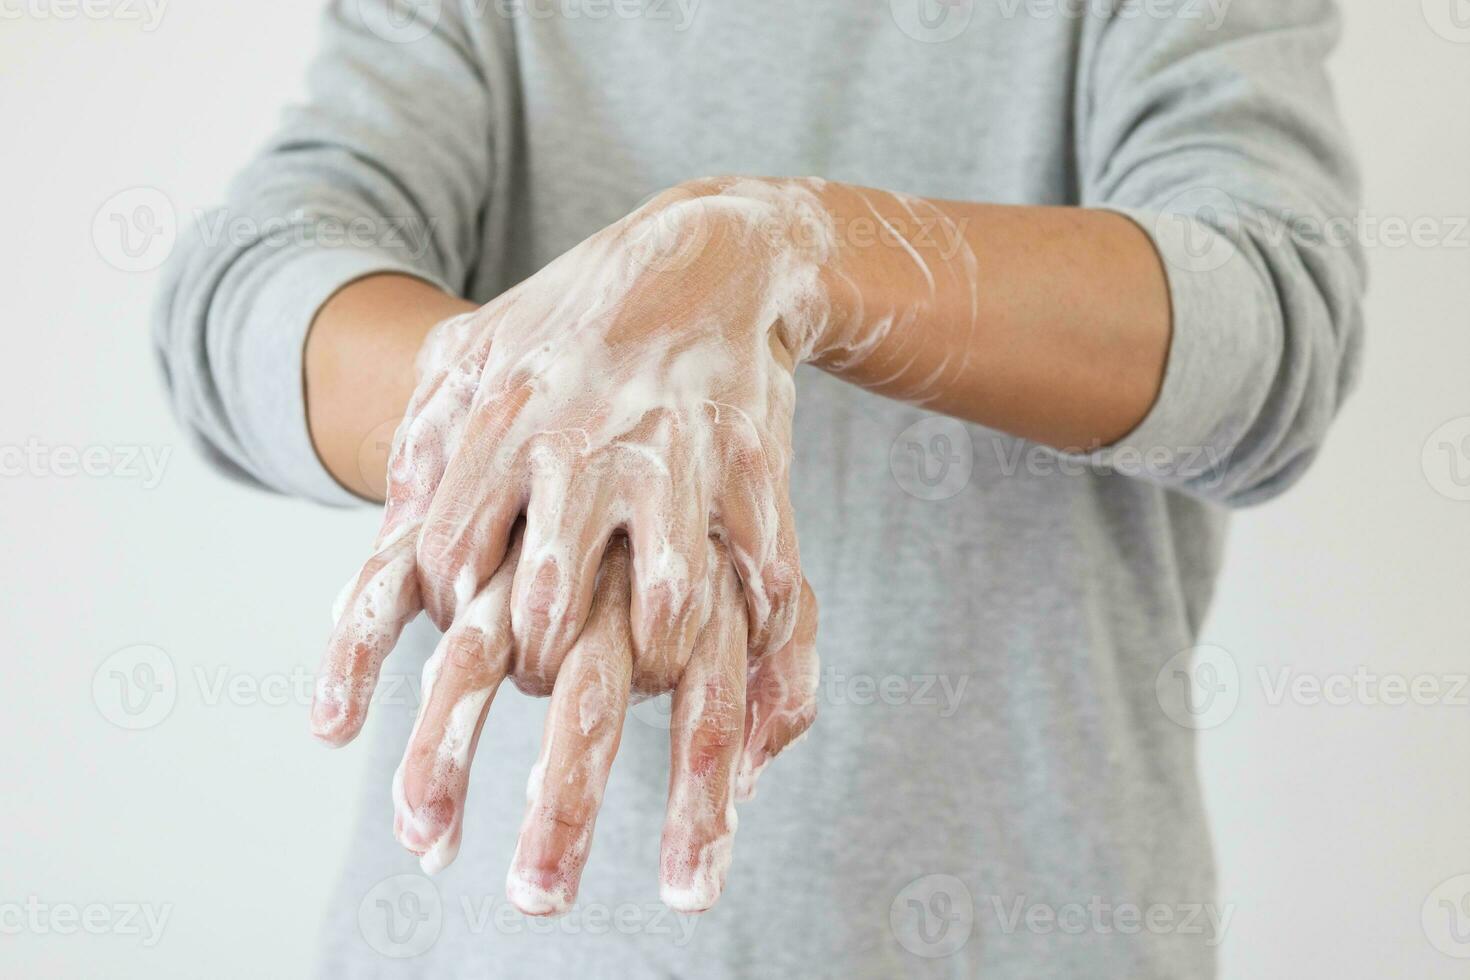 uomo lavare mani con sapone per covid-19 corona virus prevenzione concetto foto